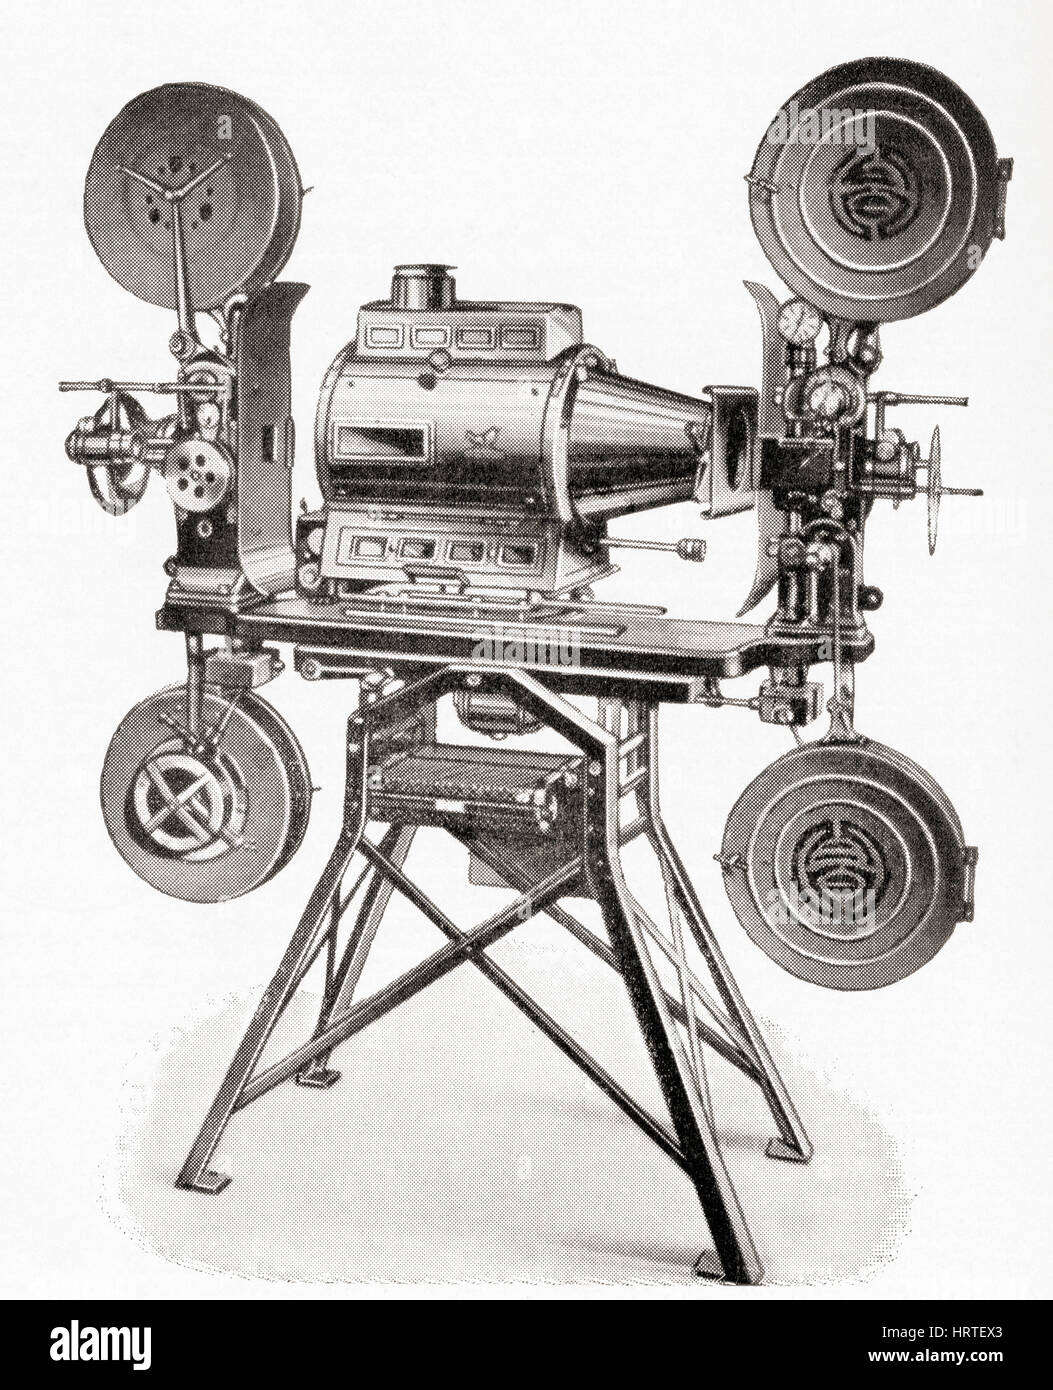 Ein Hahn Görzer Twin Projektion Film-Kamera.  Aus Meyers Lexikon veröffentlicht 1927. Stockfoto